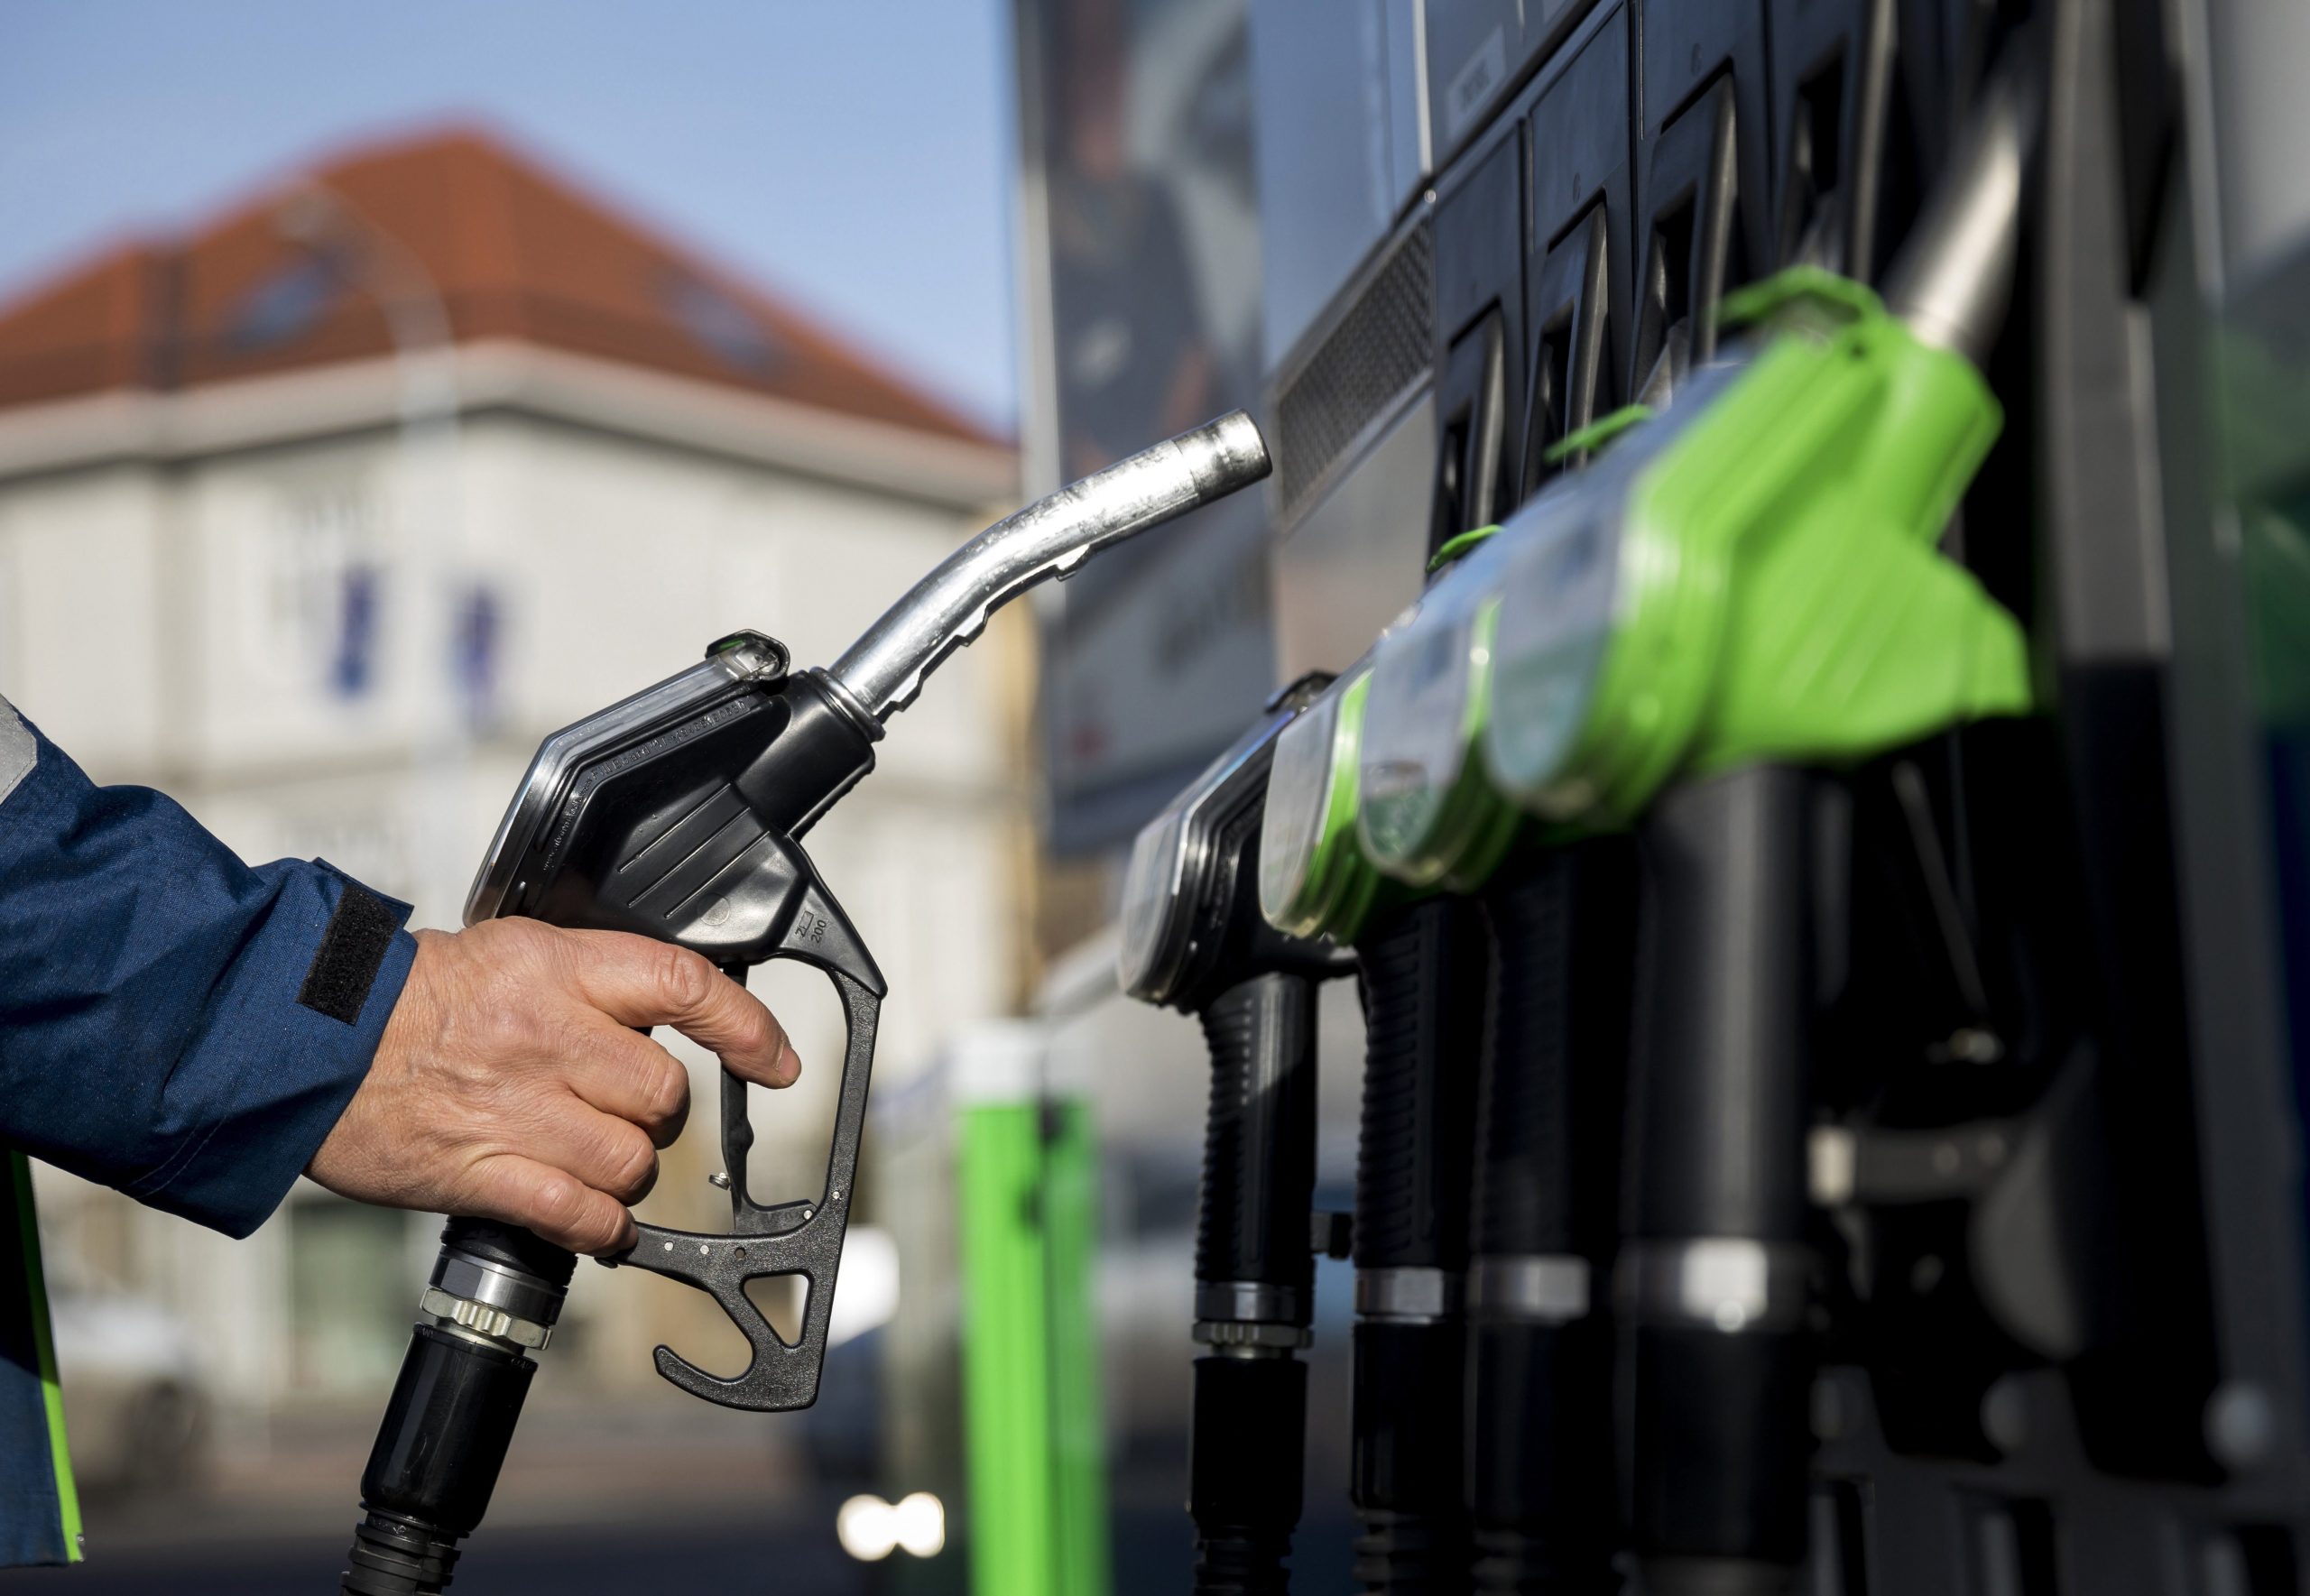 Verband der unabhängigen Tankstellen fordert Aufhebung des Kraftstoffpreisstopps